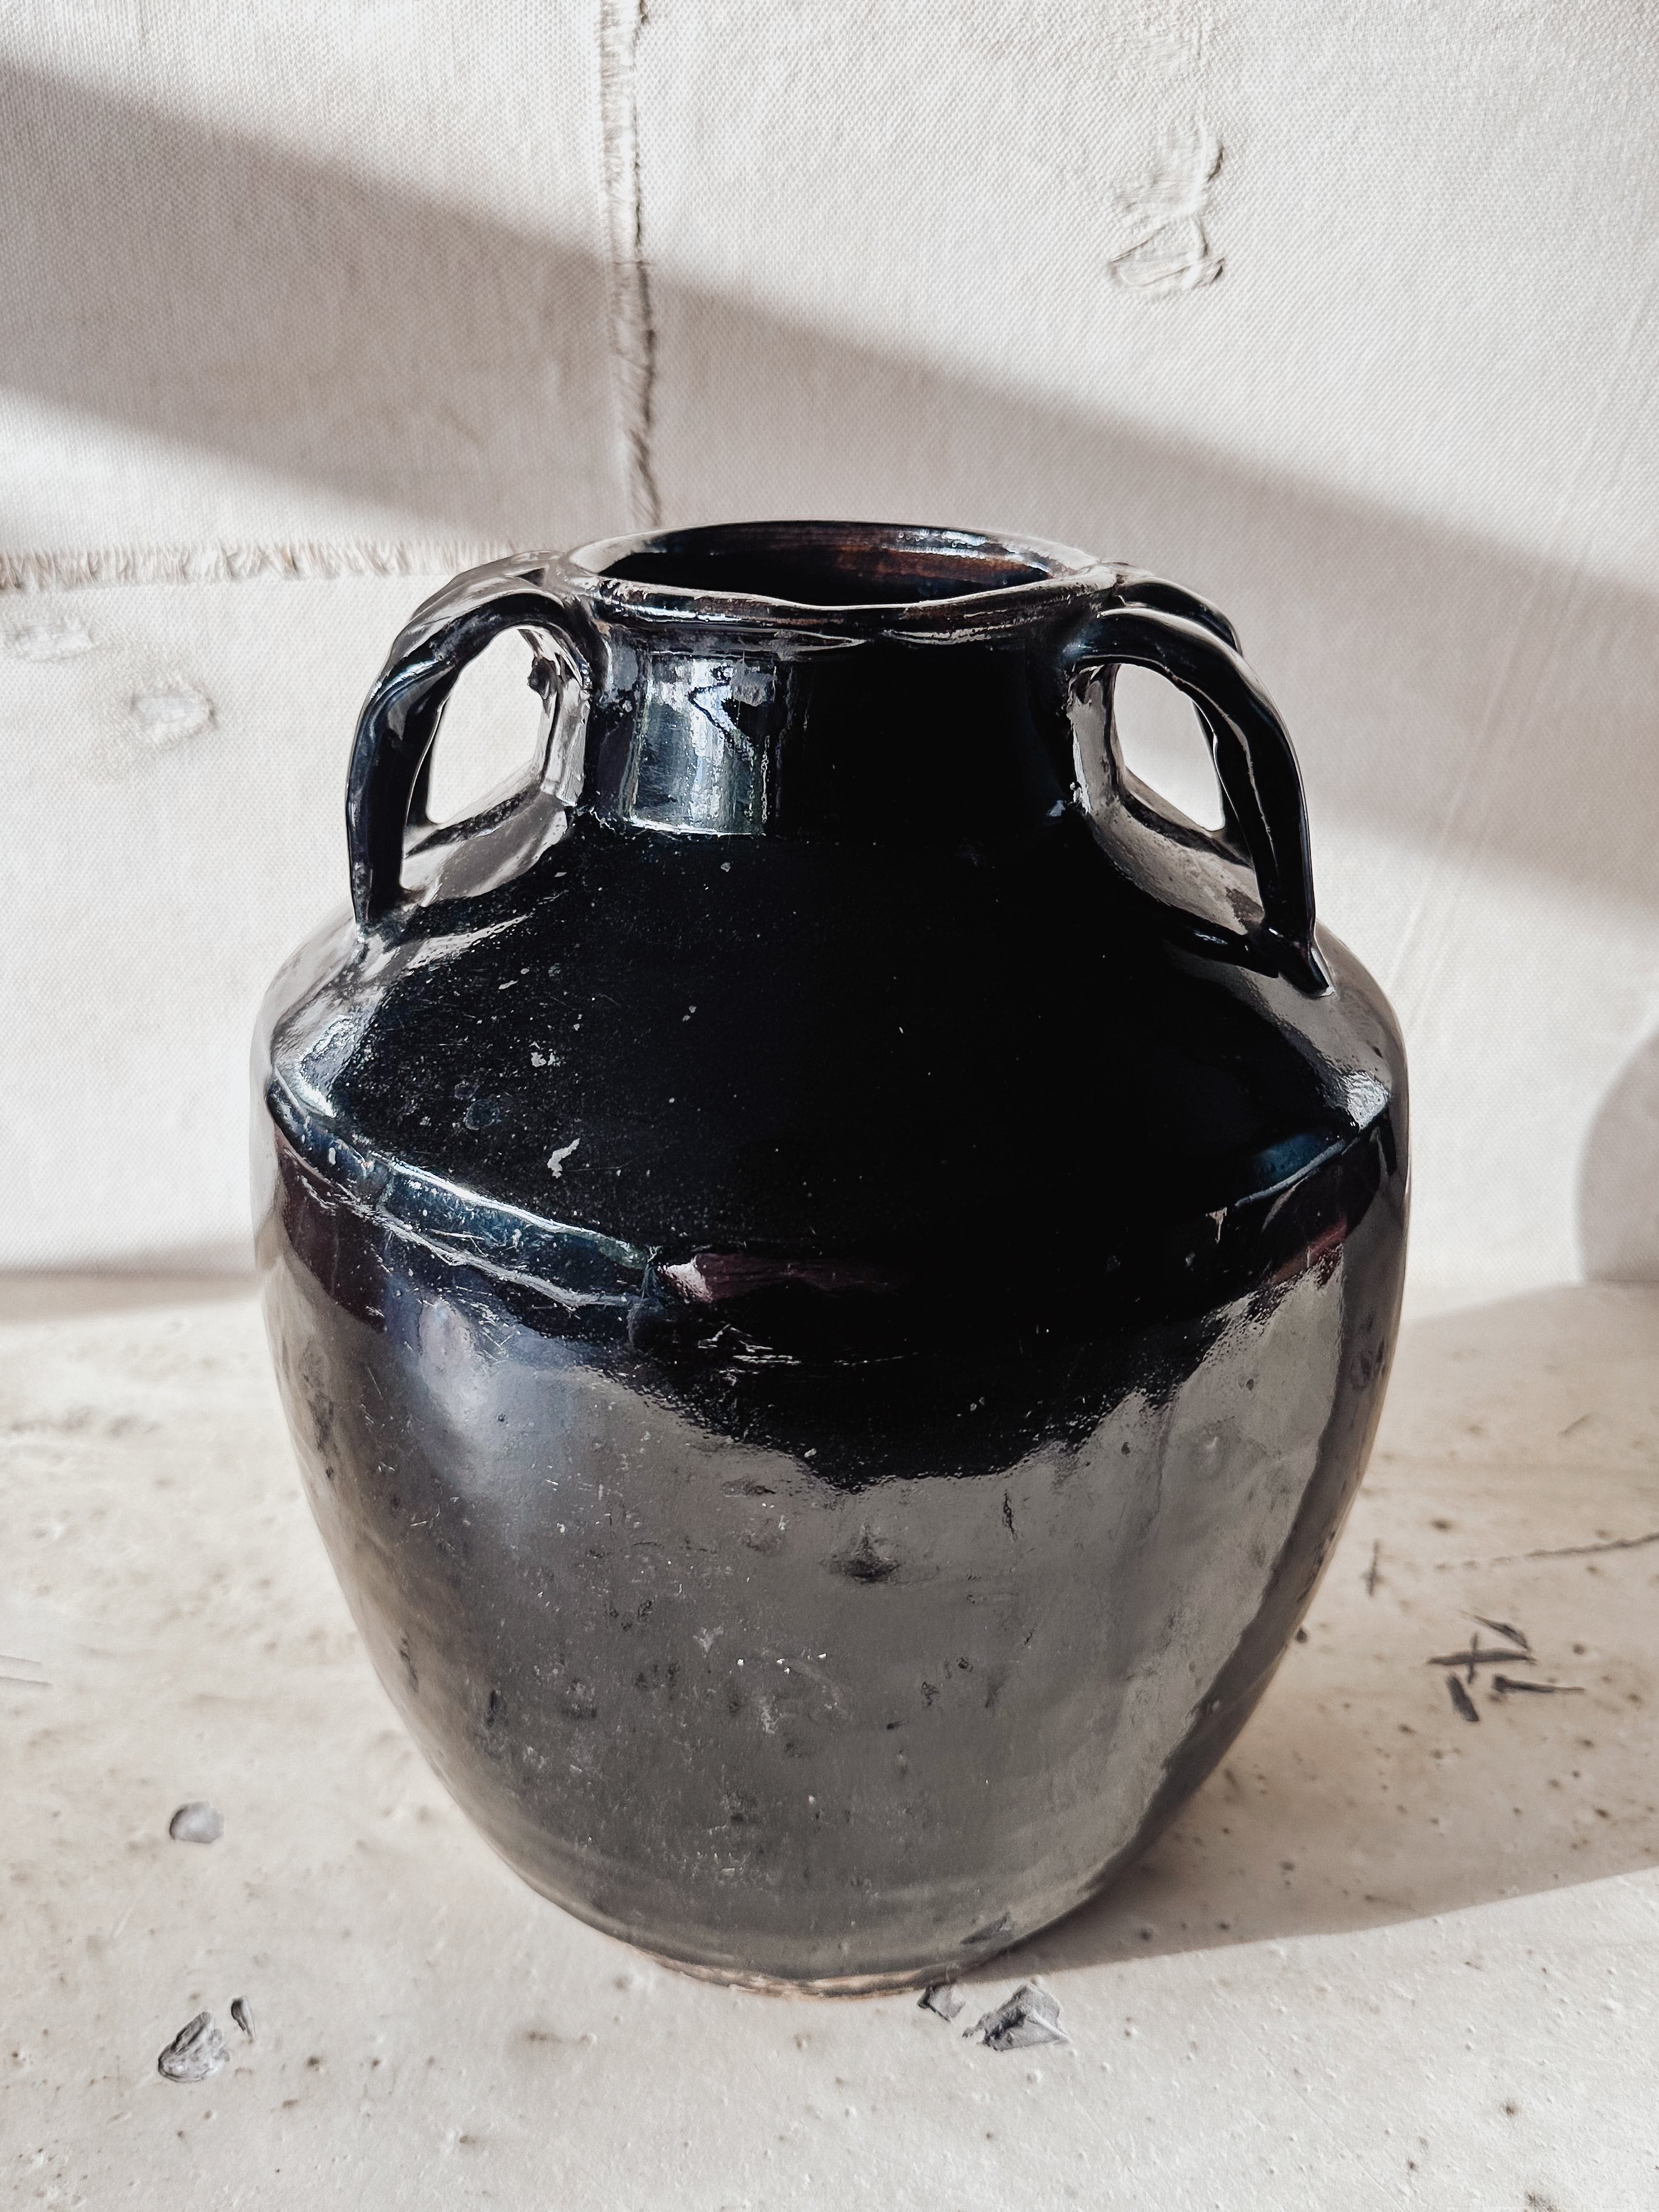 Vase antique black with side handles